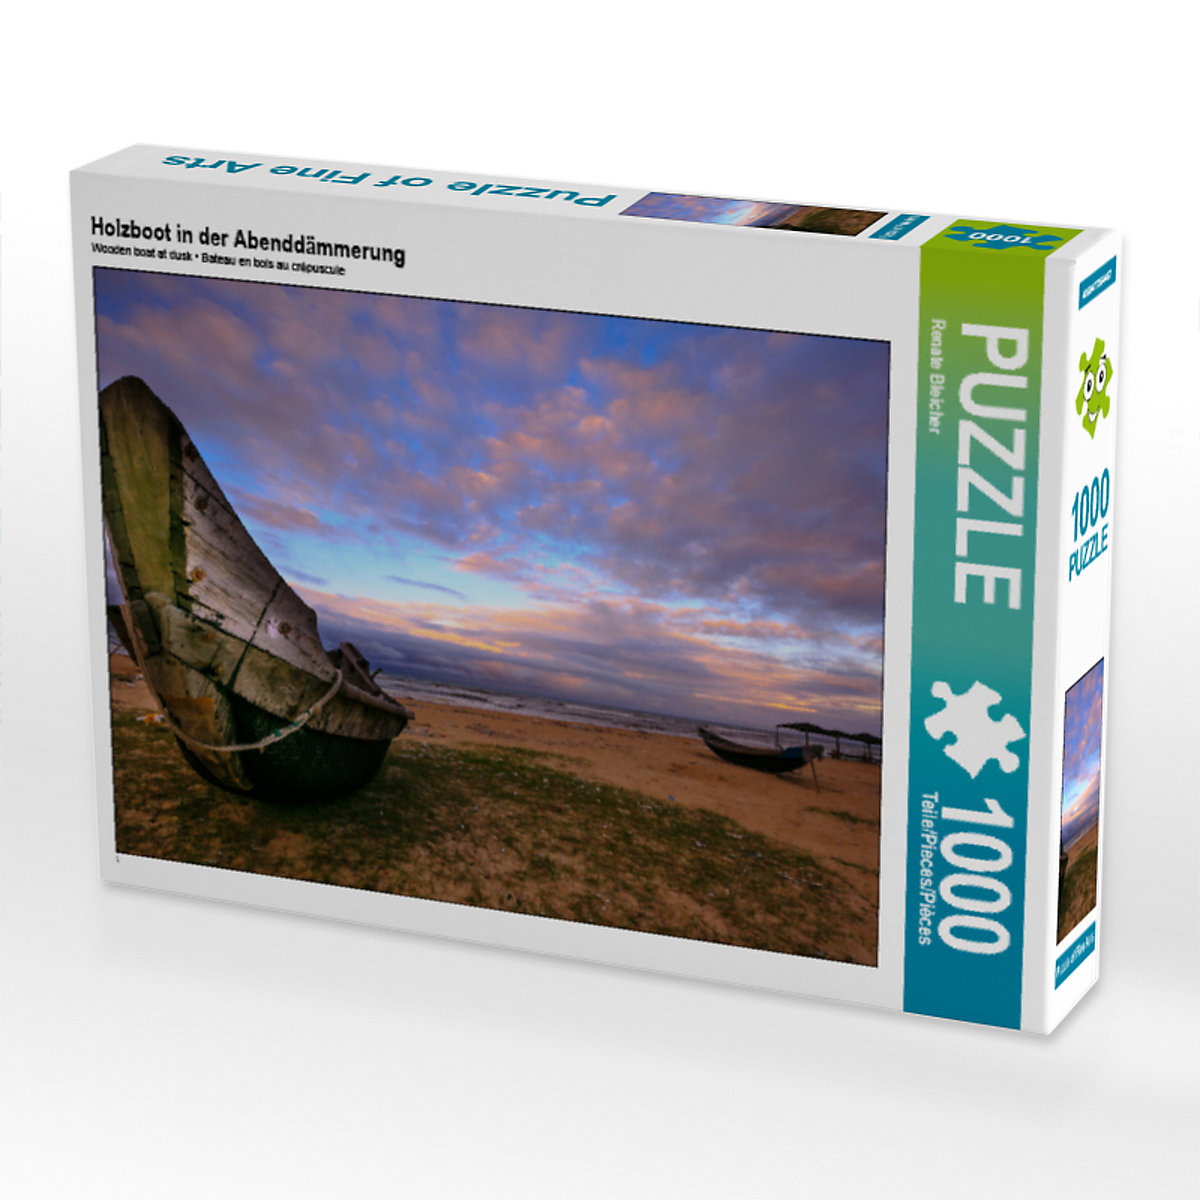 CALVENDO® Puzzle CALVENDO Puzzle Holzboot in der Abenddämmerung 1000 Teile Foto-Puzzle für glückliche Stunden